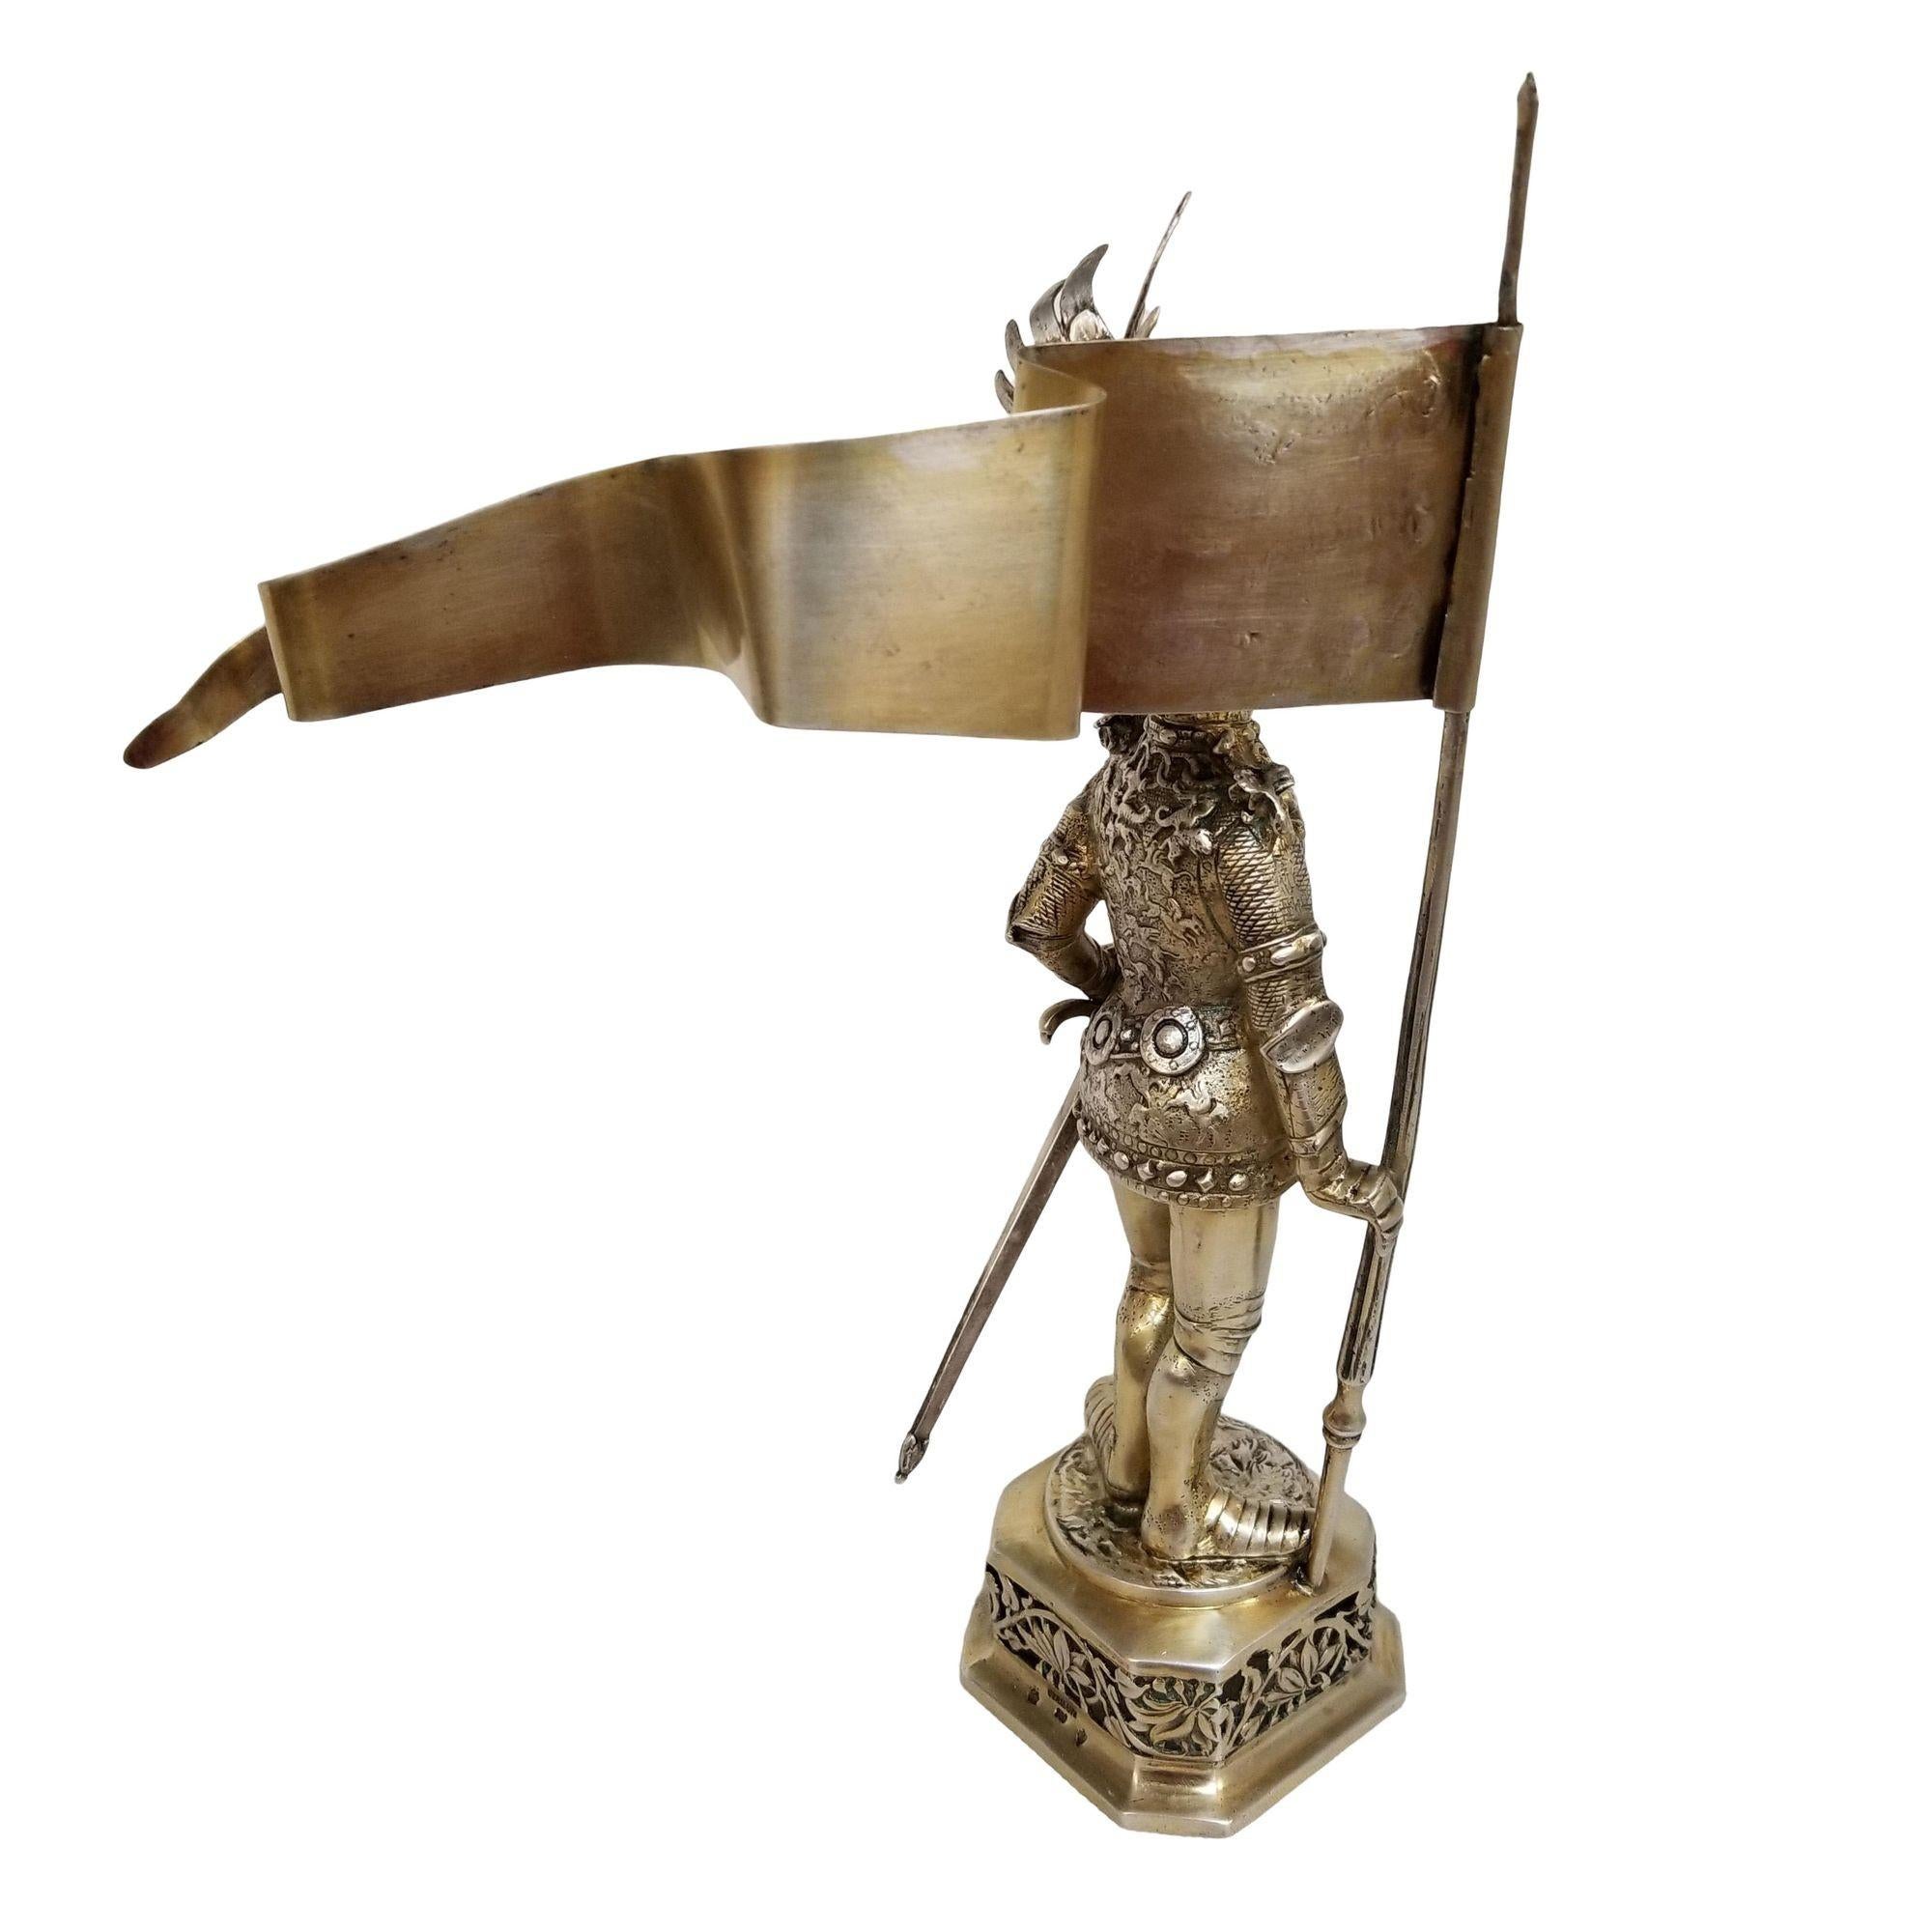 Diese antike Ritterfigur aus Sterlingsilber aus dem 19. Jahrhundert ist ein fesselndes Meisterwerk. In voller mittelalterlicher Rüstung, mit Stab und Fahne, zeigen die beweglichen Visiere und das aufwendig gravierte Wappen unvergleichliche